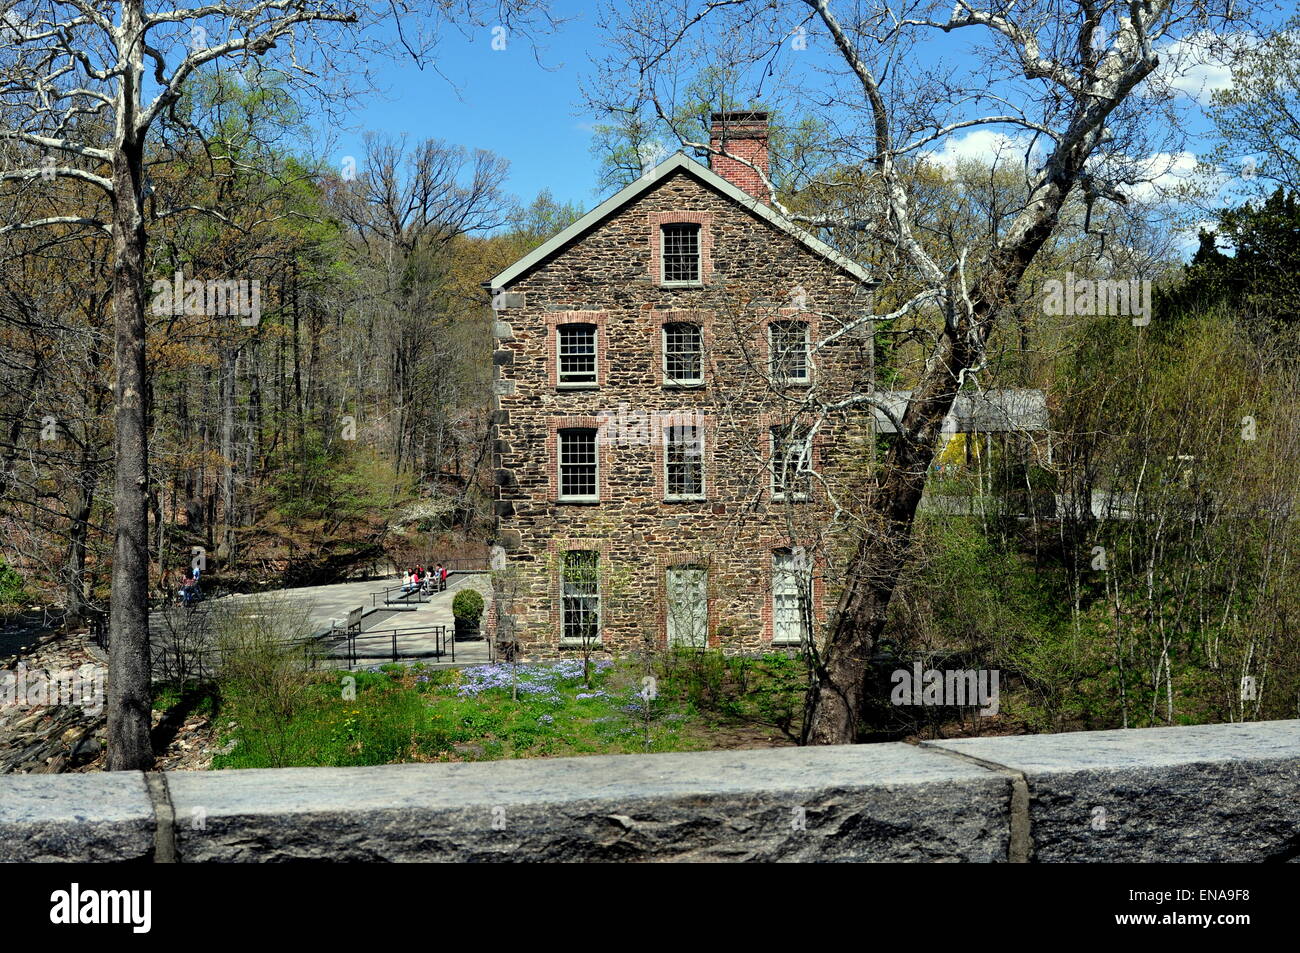 Bronx, New York: 1840 vecchio mulino in pietra sul fiume Bronx a New York il Giardino Botanico Foto Stock